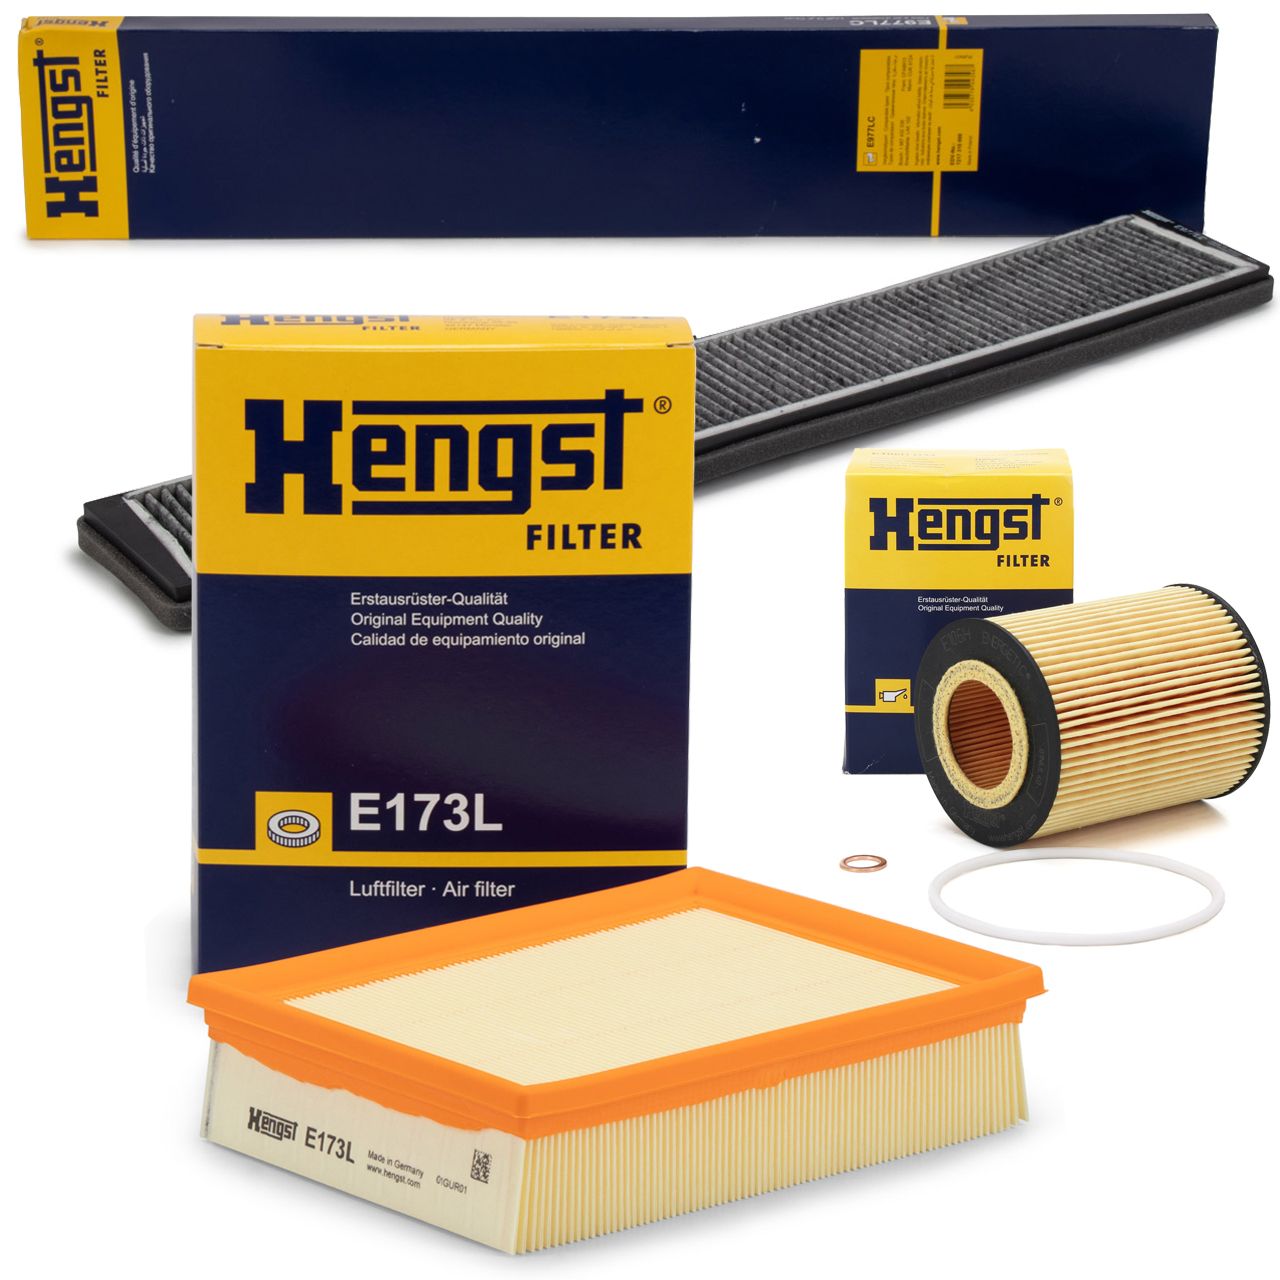 HENGST Filter-Set für BMW 3er E46 320i 323i 325i 328i 330i 150-231 PS M52 M54